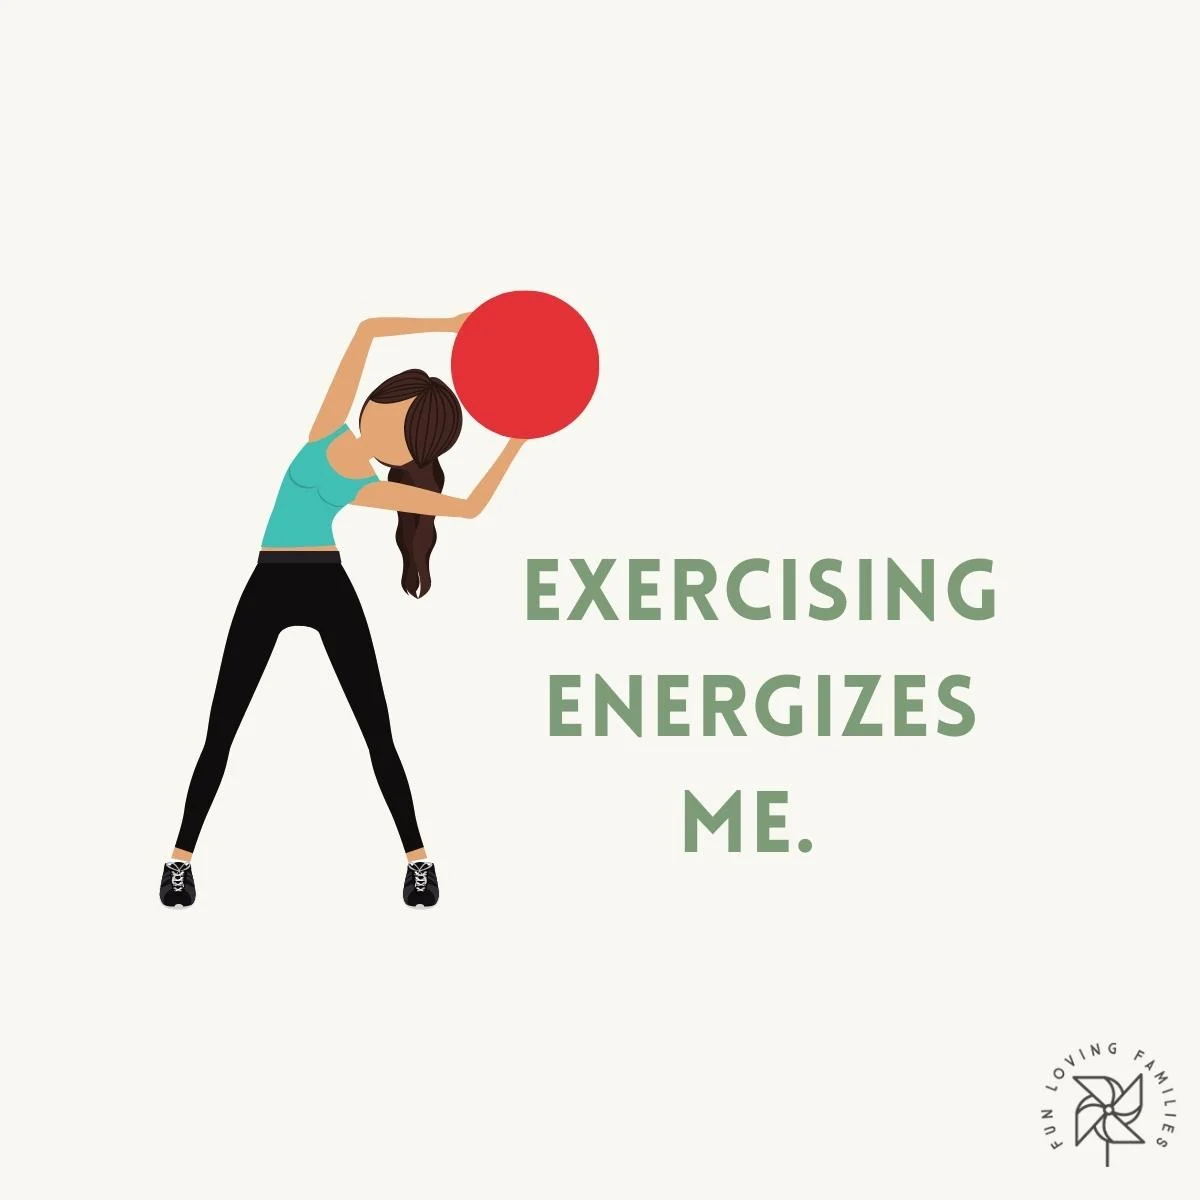 Exercising energizes me affirmation